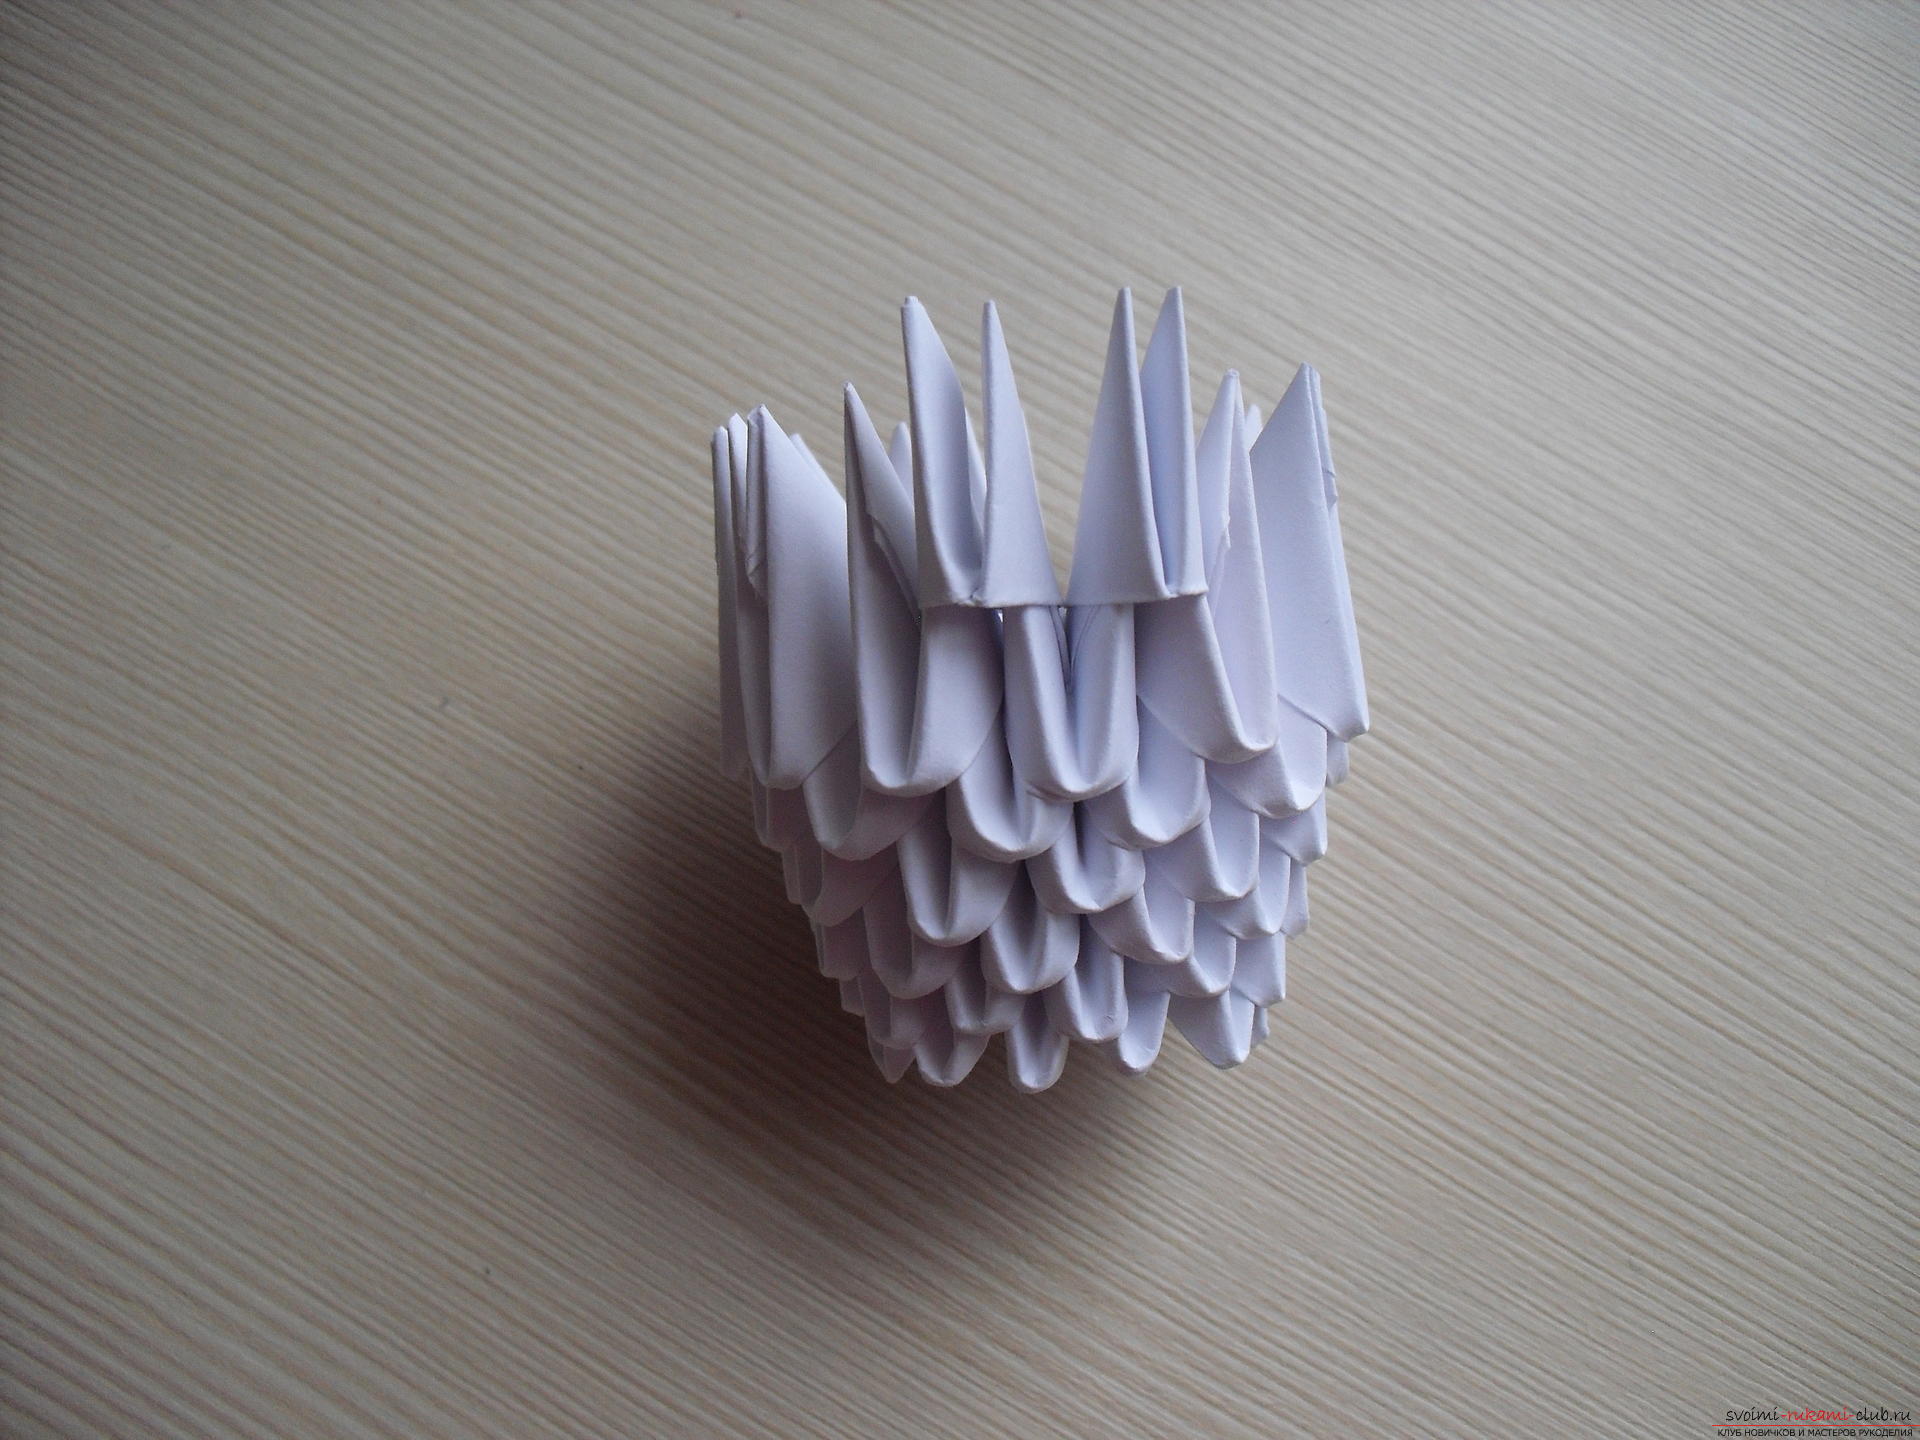 Този майсторски клас ще ви научи как да направите модулен оригами - гъста агарска гъска .. Снимка # 14